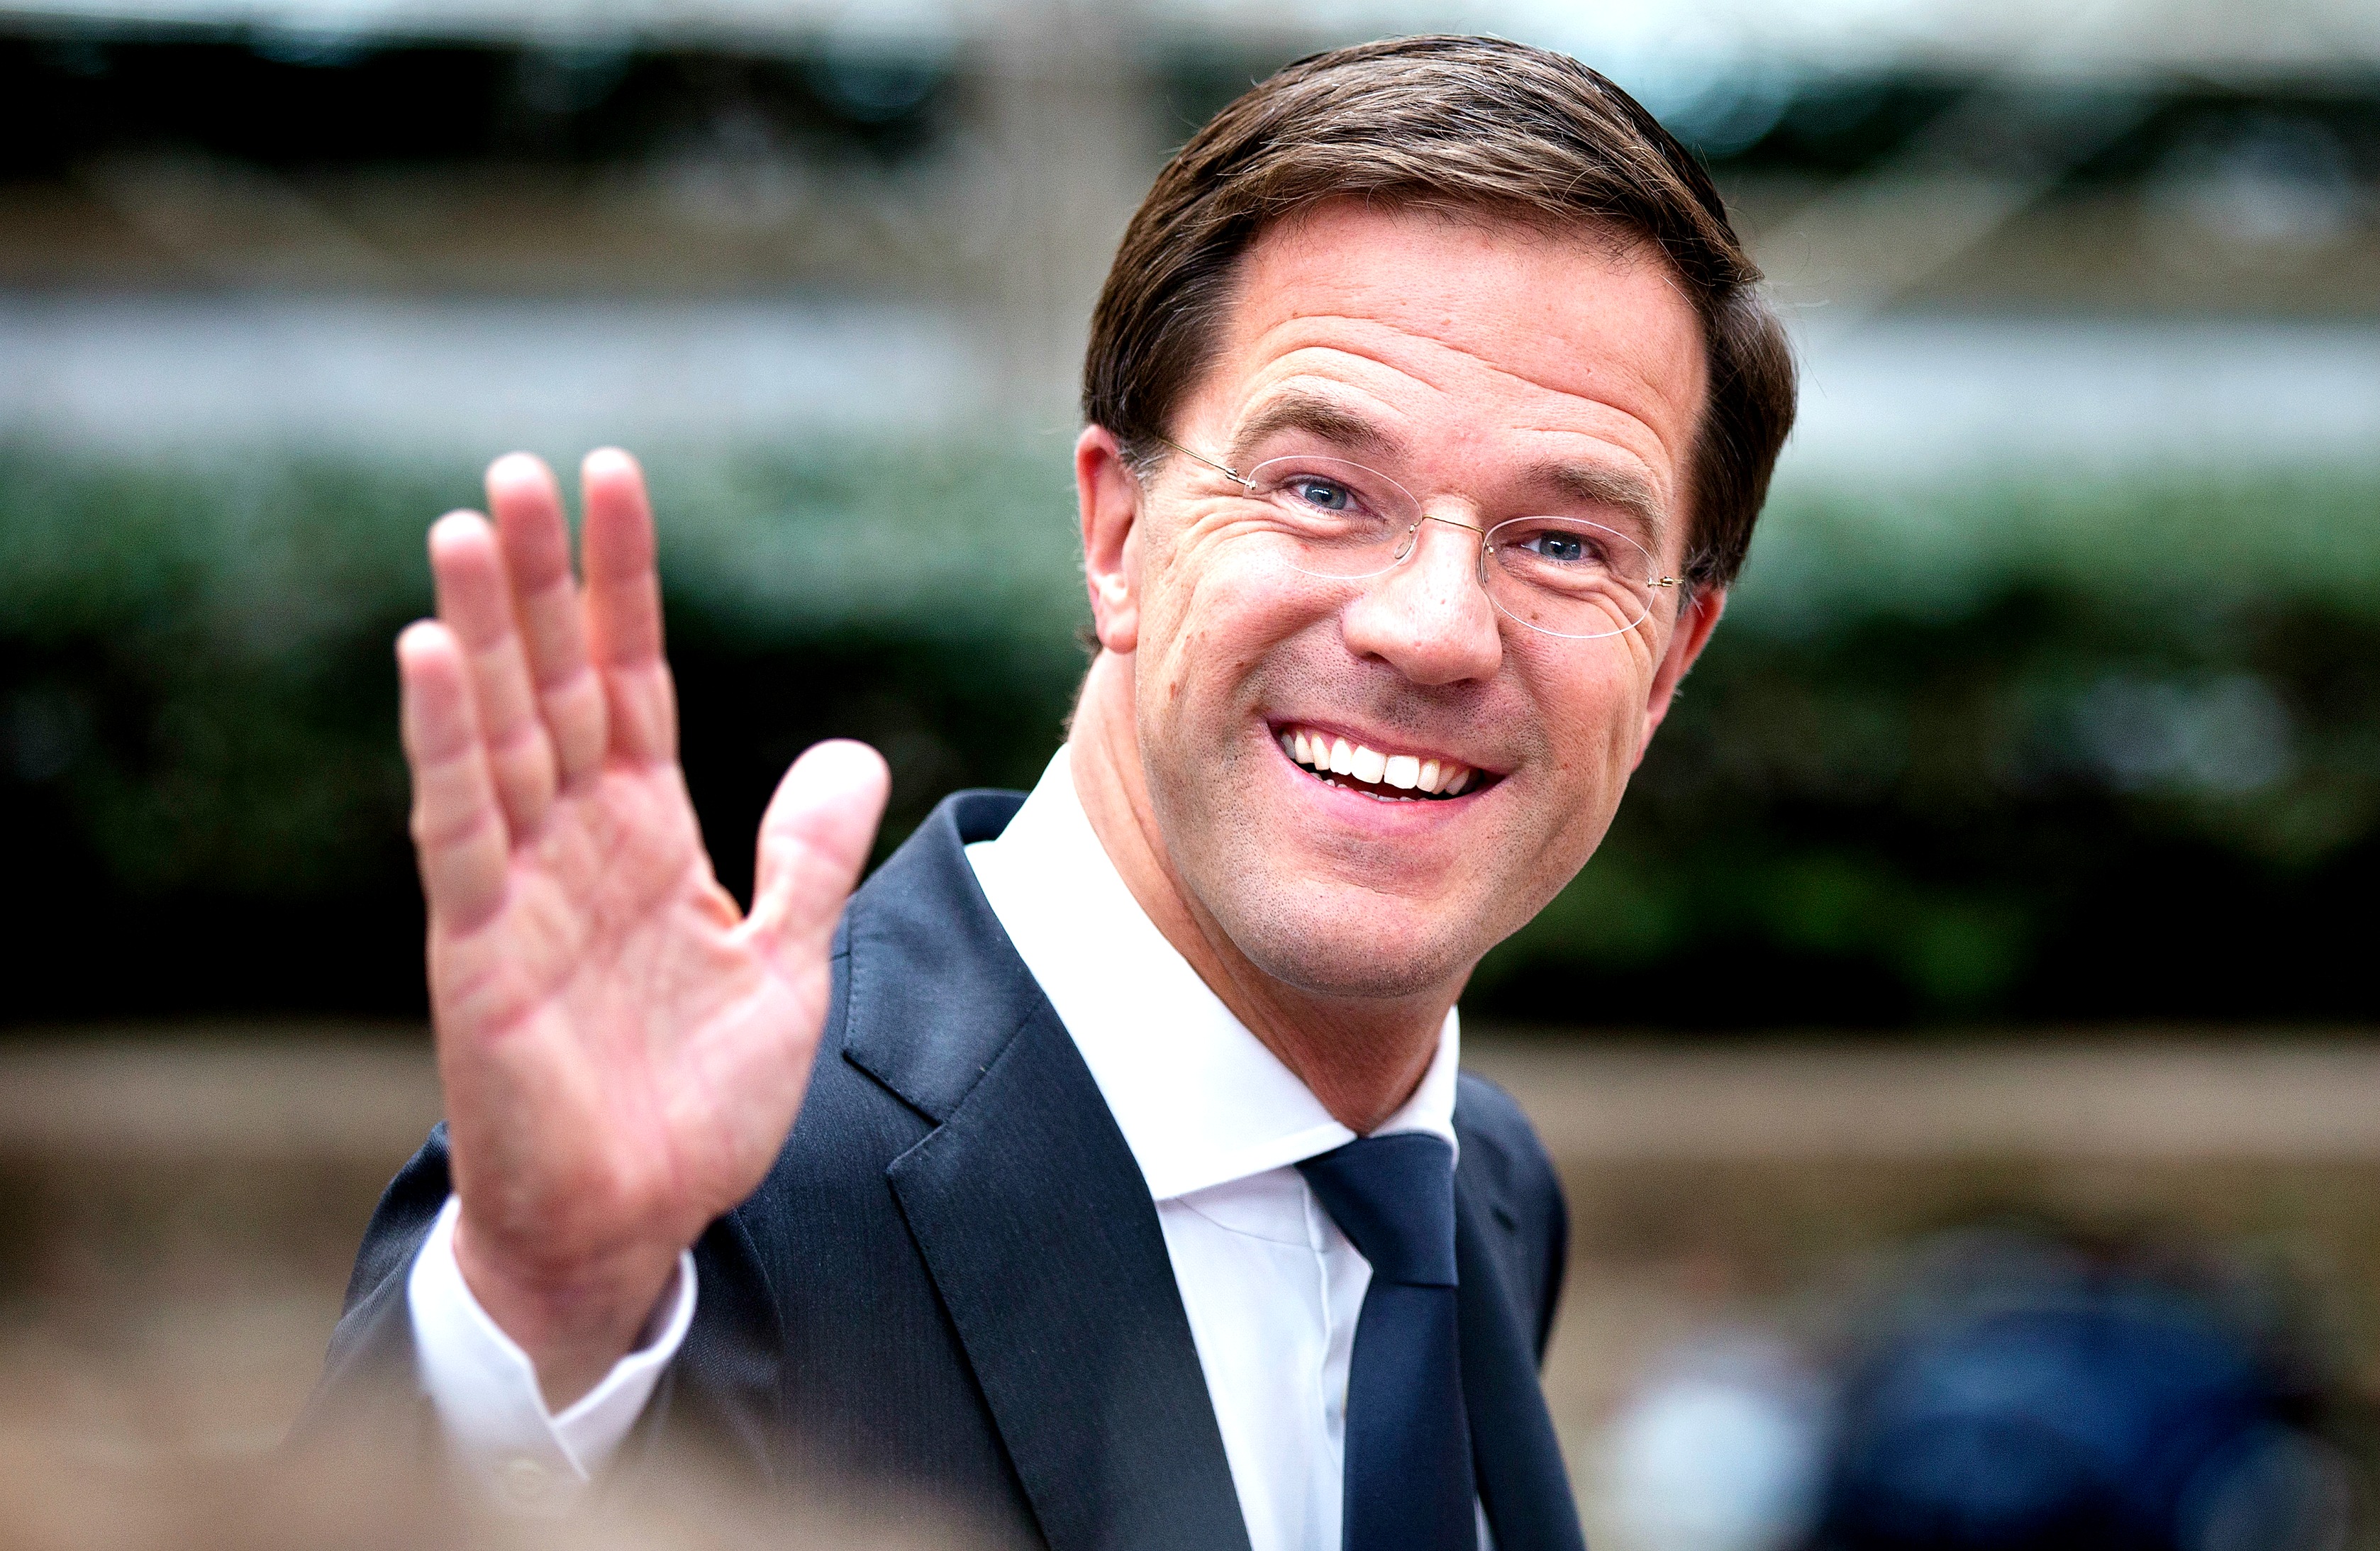 Mark Rutte voelt "een ongelooflijke drive". Hij wil na de verkiezingen van maart 2017 graag door als premier van Nederland. Dat is geen uitgemaakte zaak. Want hoewel de VVD-premier Nederland door een extreem zware crisisperiode loodste, blijft de 'hervormingsbonus' vooralsnog uit voor het kabinet Rutte II. Dinsdag presenteert het VVD-PvdA-kabinet zijn laatste begroting. Dan kan ook de balans worden opgemaakt van zes jaar Mark Rutte, in twee kabinetten. Rutte loodste Nederland vanaf 2010 door de pijnlijke nasleep van de kredietcrisis. Aanvankelijk moeizaam in het door de PVV gedoogde kabinet Rutte I van VVD en CDA.